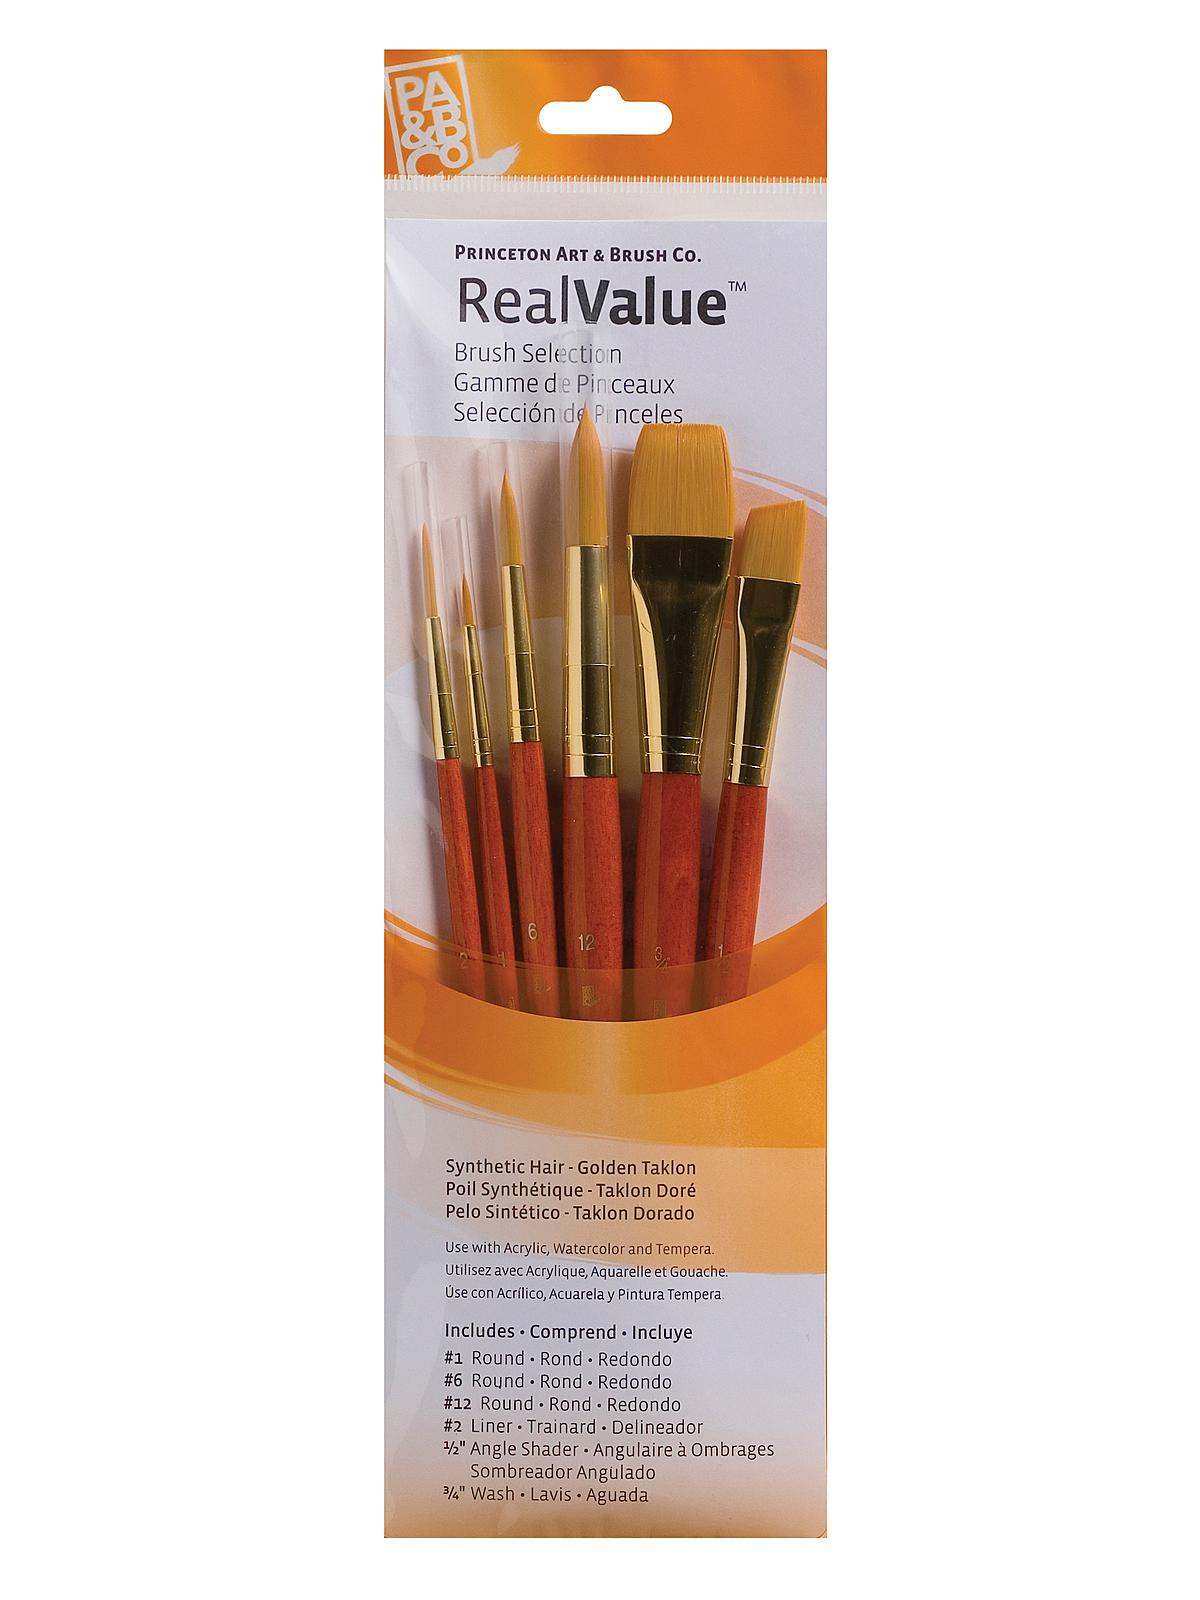 Real Value Series 9000 Orange Handled Brush Sets 9153 Set Of 6